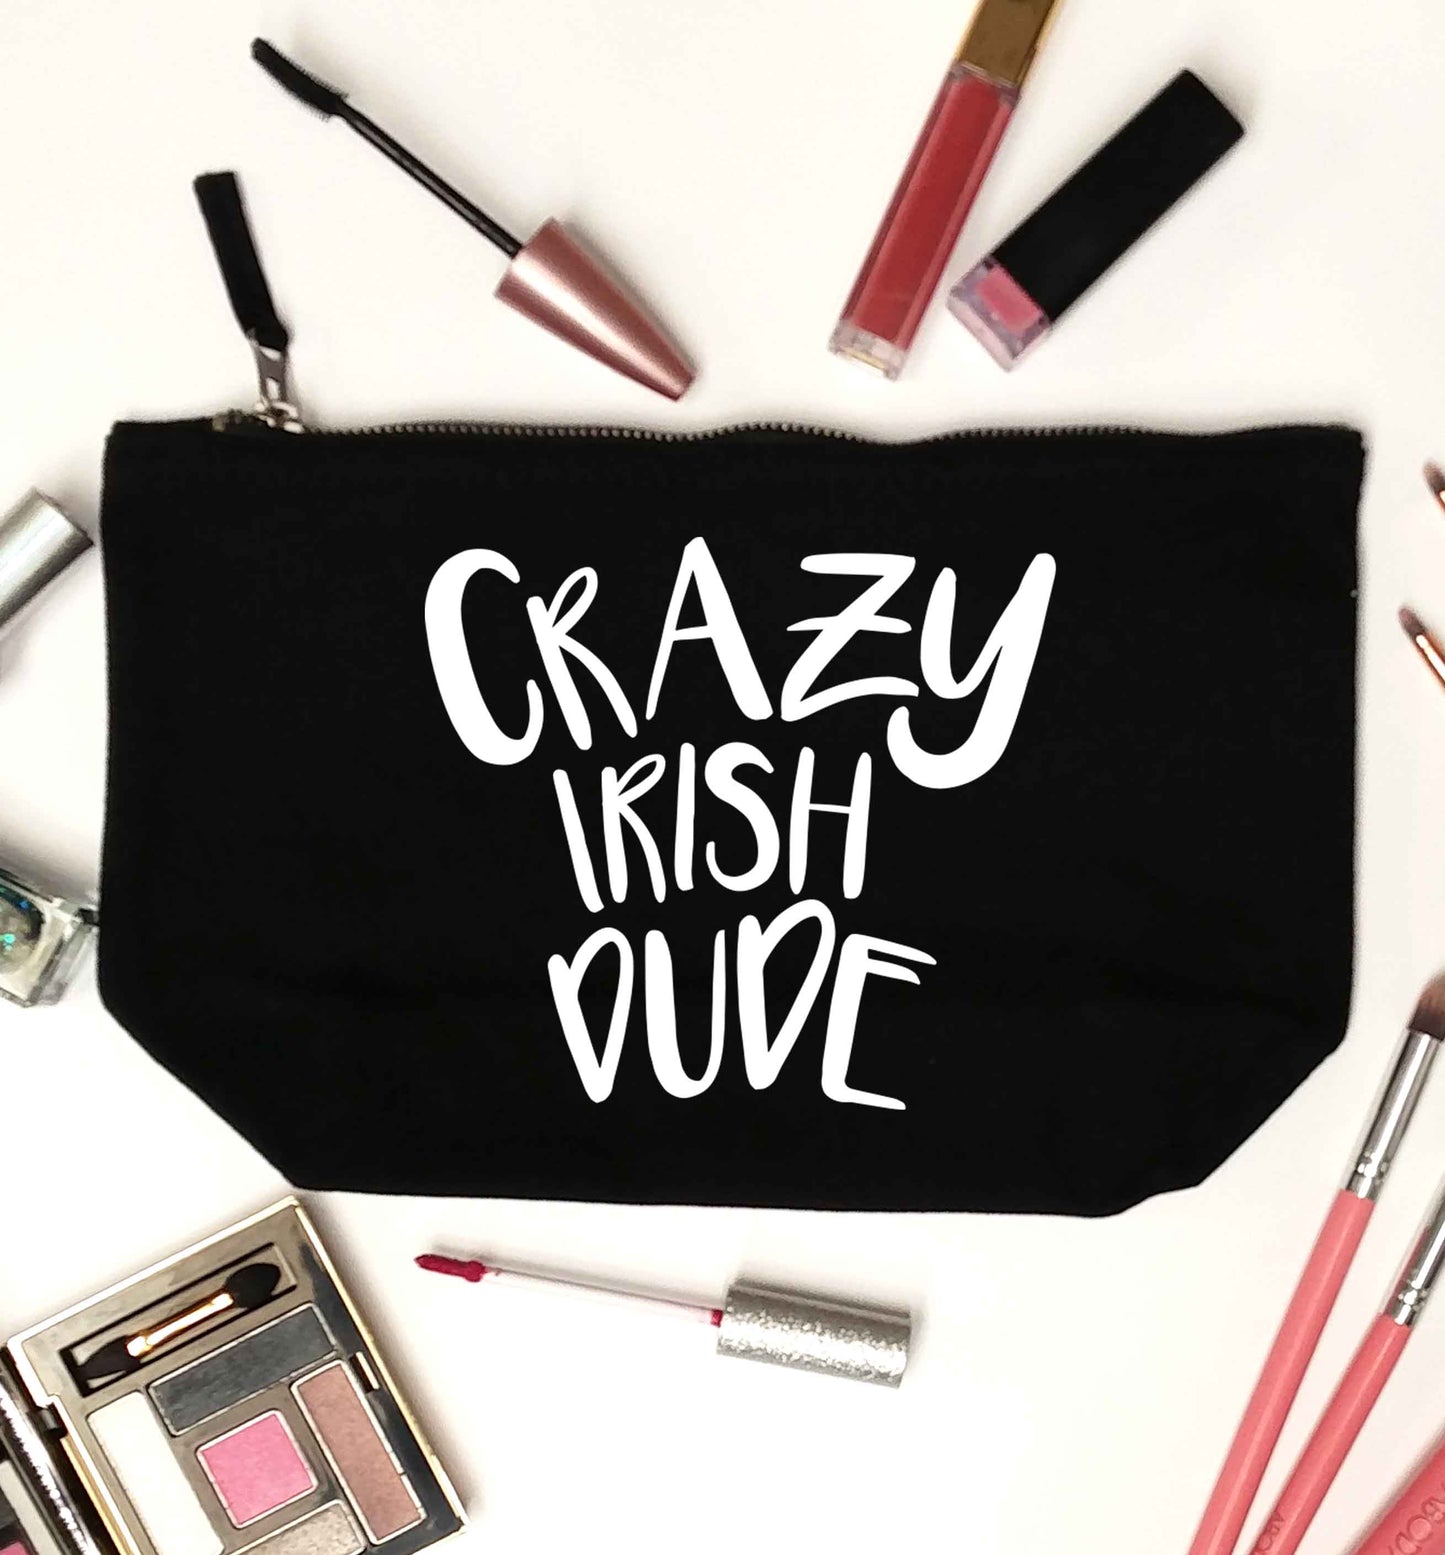 Crazy Irish dude black makeup bag